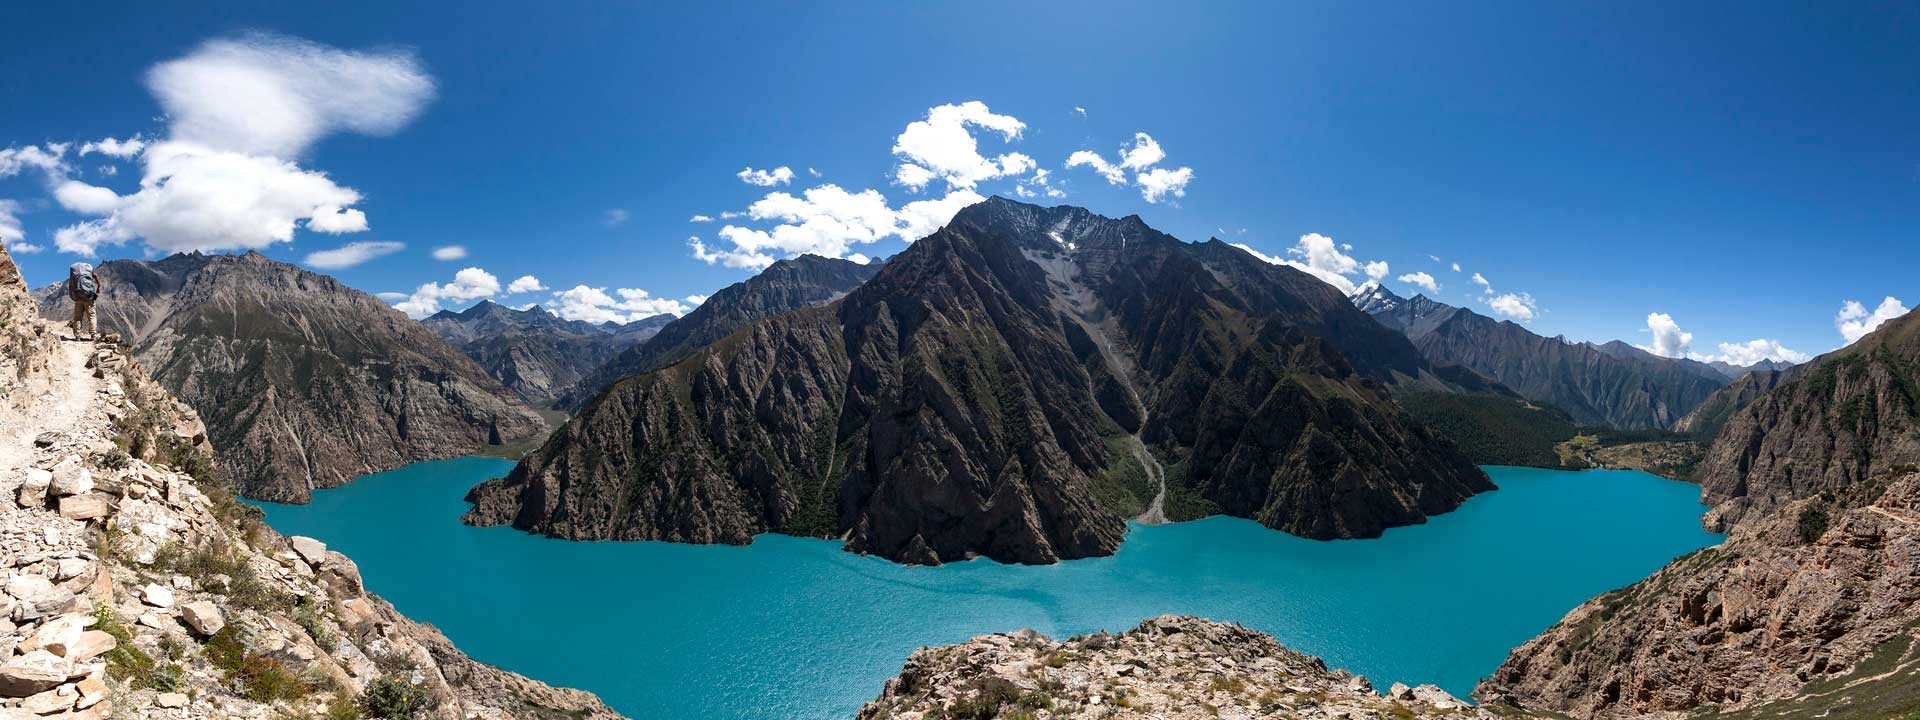 Shey phoksundo lake trek in nepal